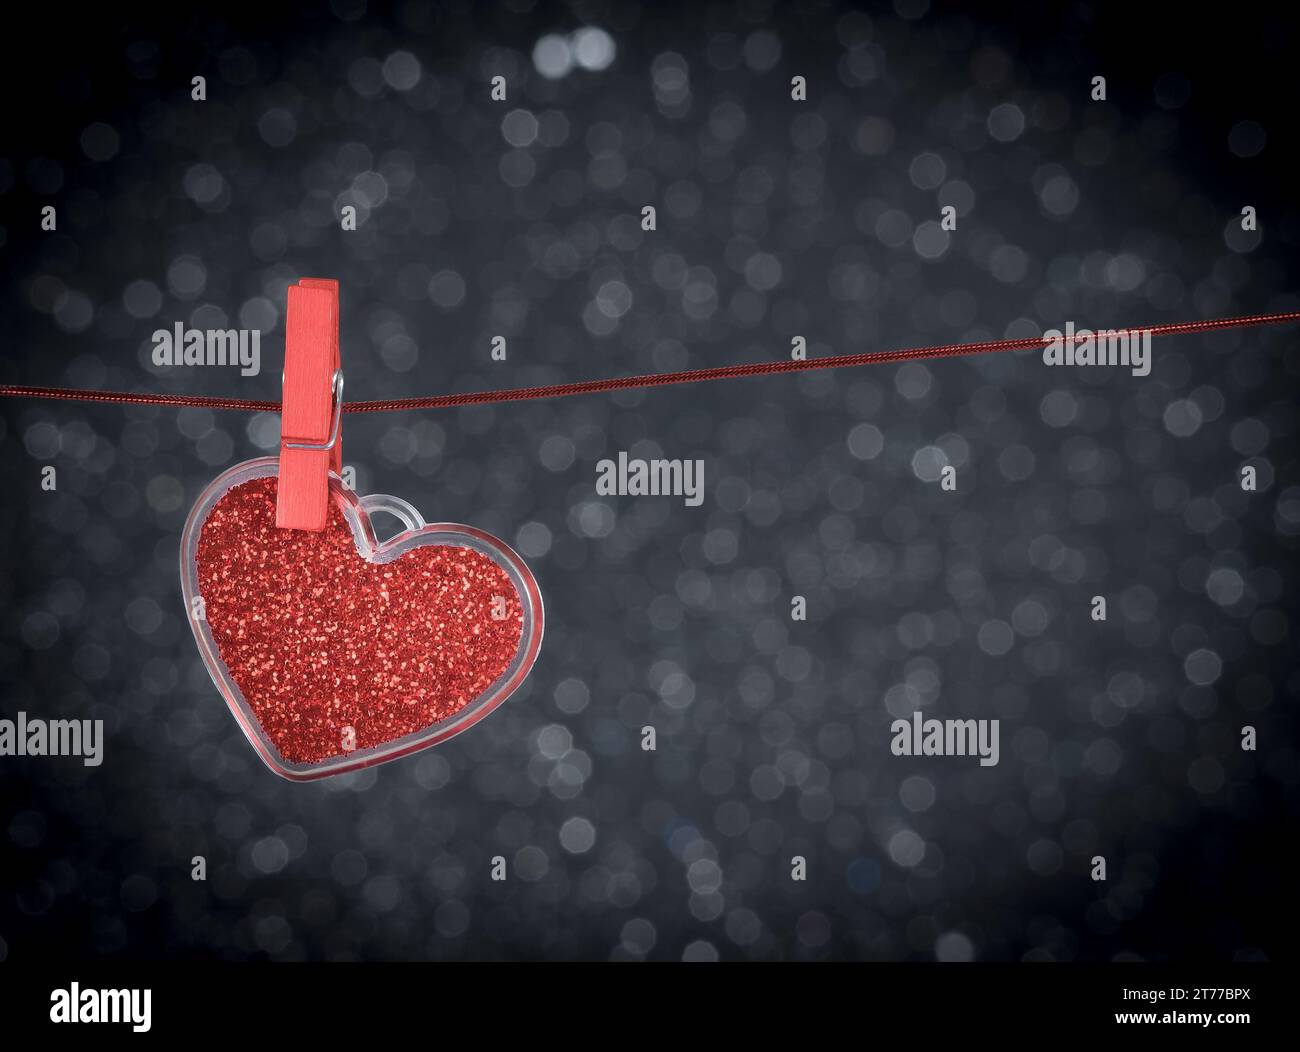 Dekoratives rotes Herz, das vor dunklem heller Bokeh-Hintergrund mit Platz für Text hängt, Konzept des valentinstages Stockfoto